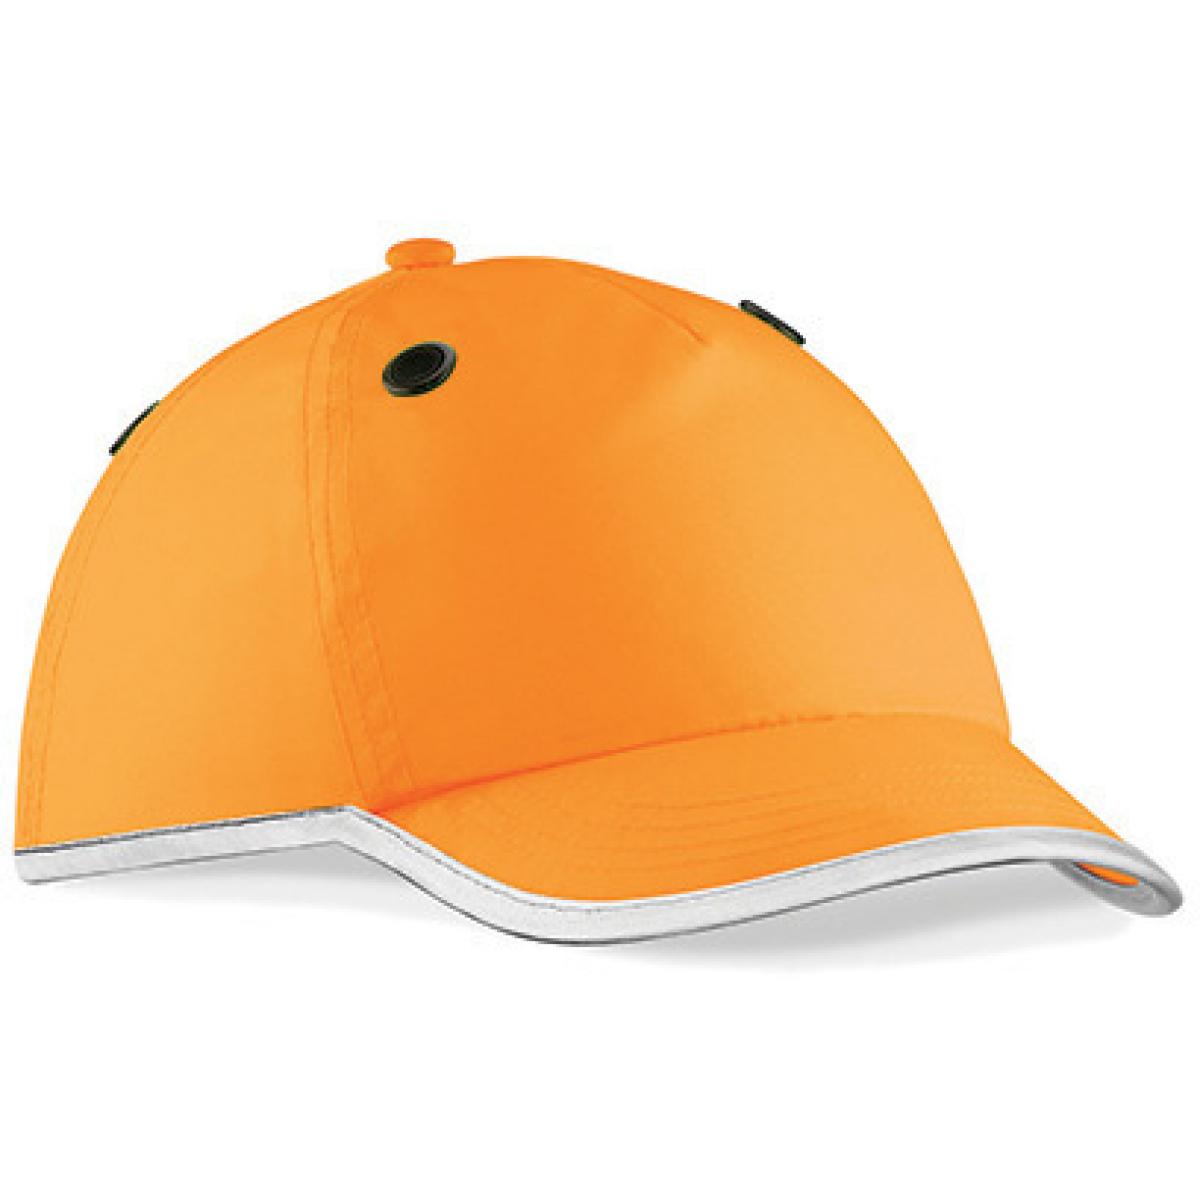 Hersteller: Beechfield Herstellernummer: B535 Artikelbezeichnung: Enhanced Bump Cap / Industrie-Schutzhelm | EN812 Farbe: Fluorescent Orange